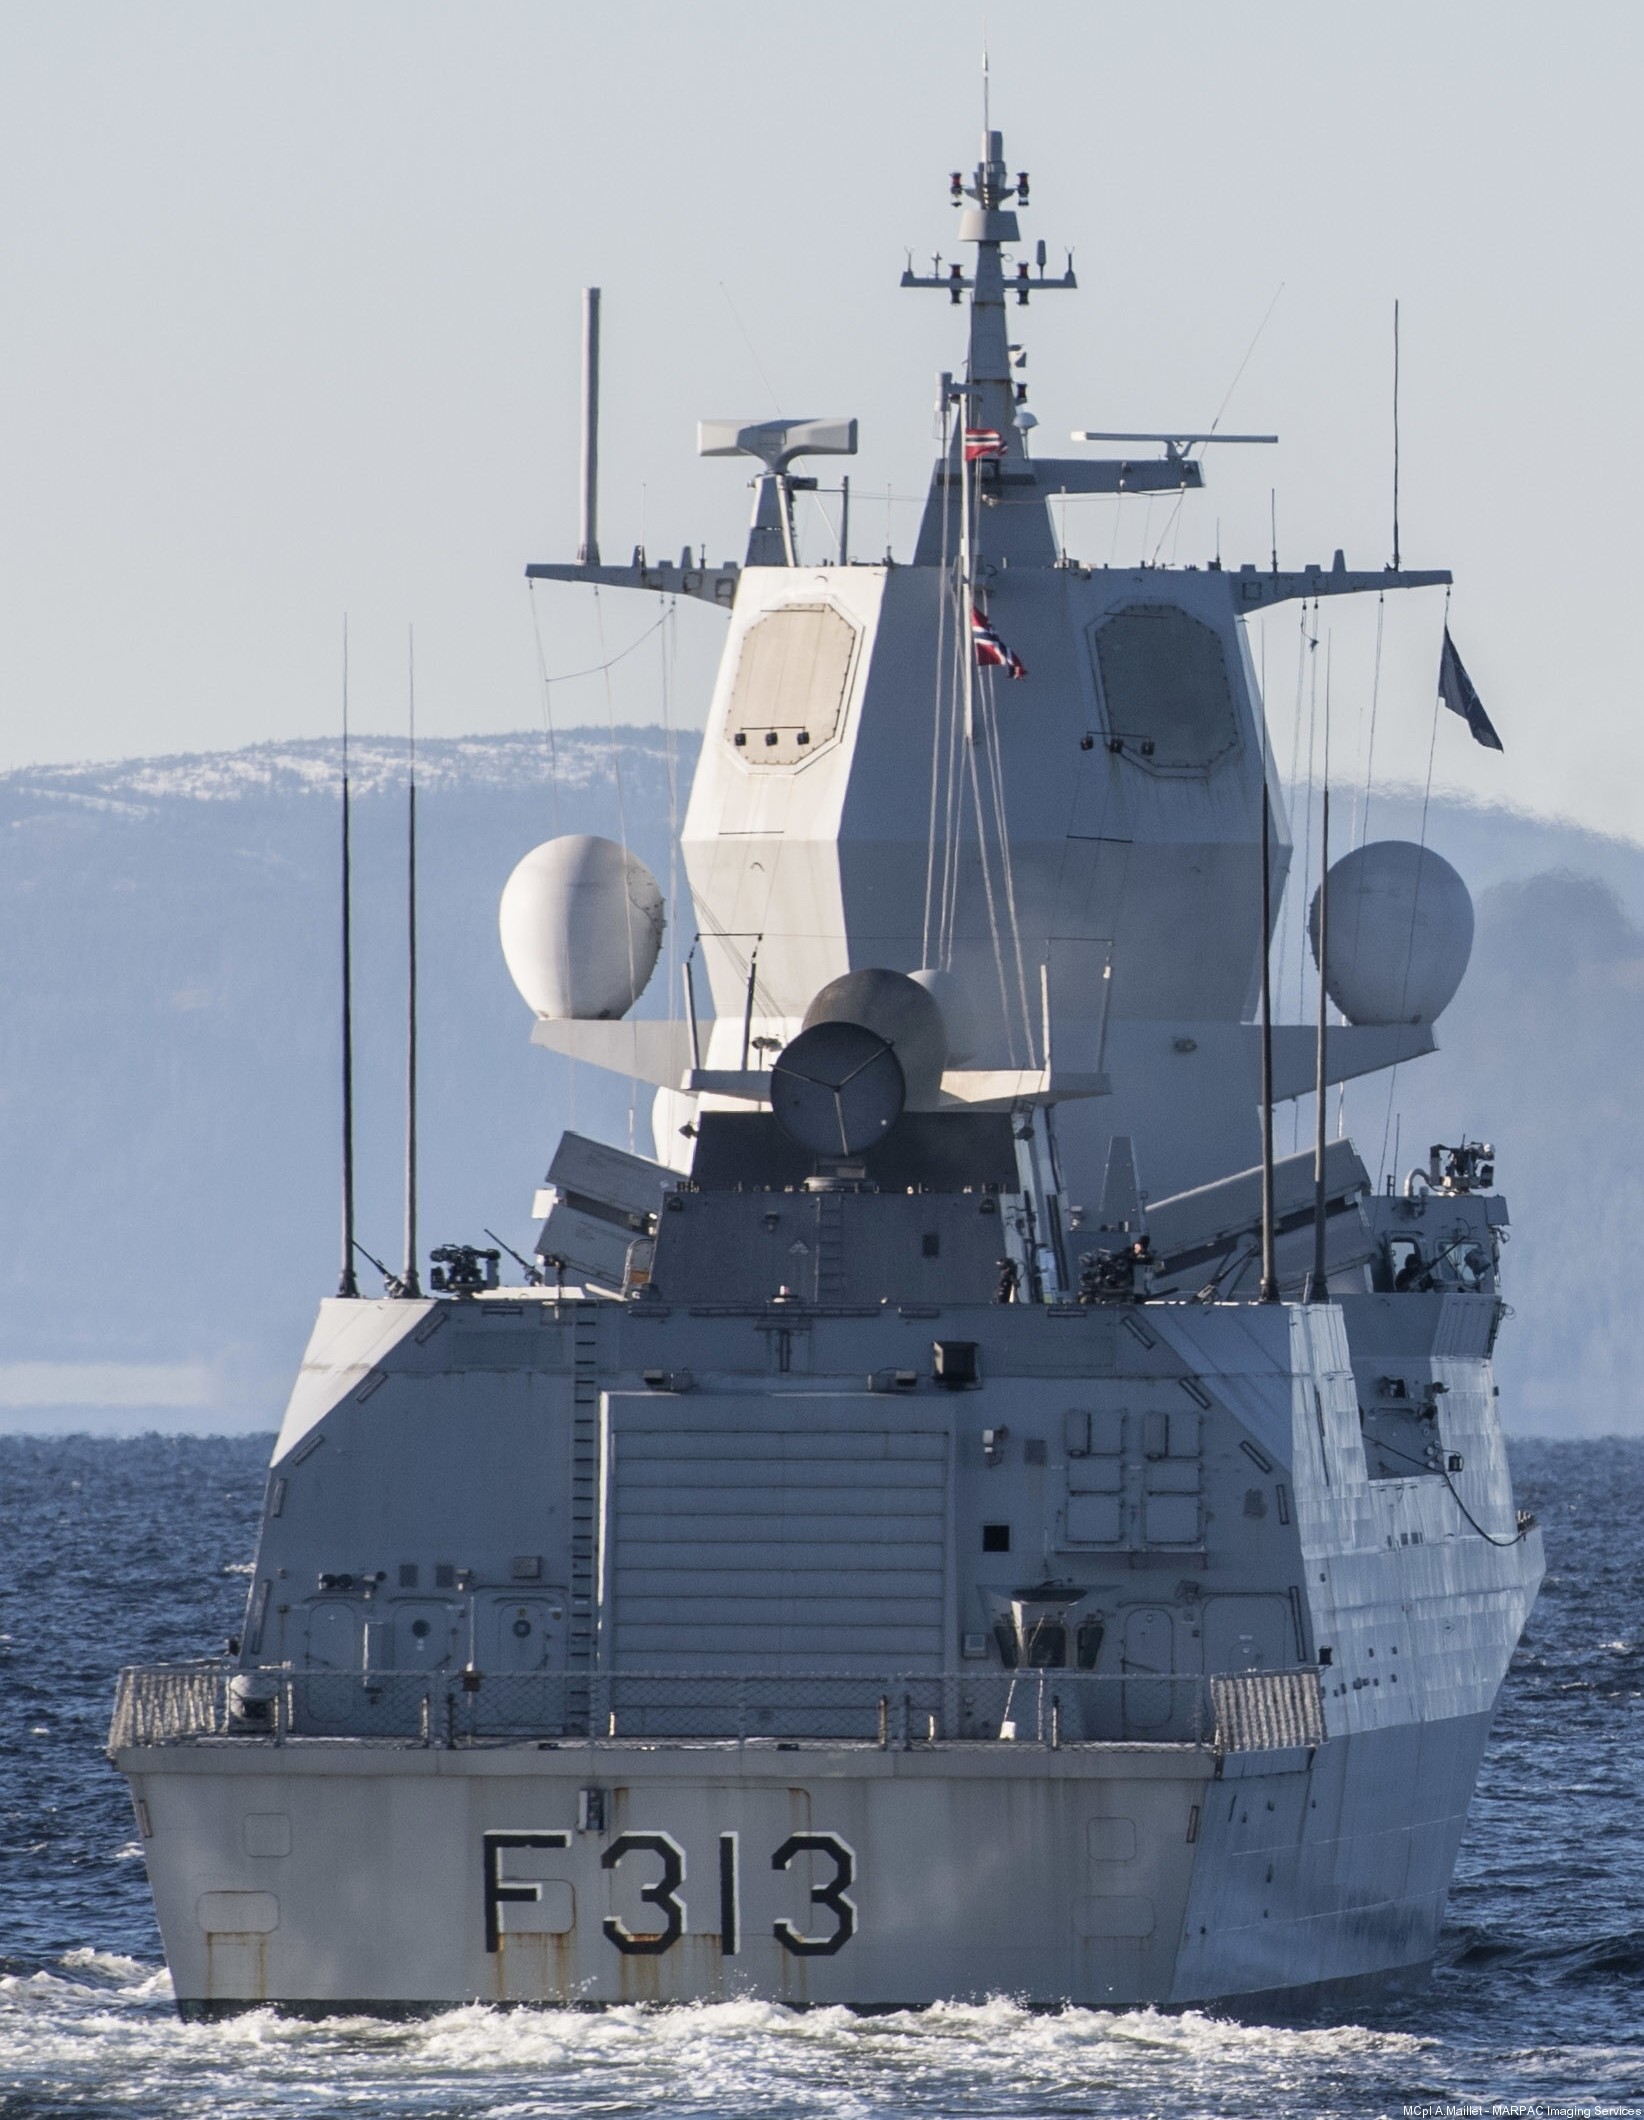 f-313 helge ingstad hnoms knm nansen class frigate royal norwegian navy 47 sjoforsvaret exercise trident juncture 2018 nato